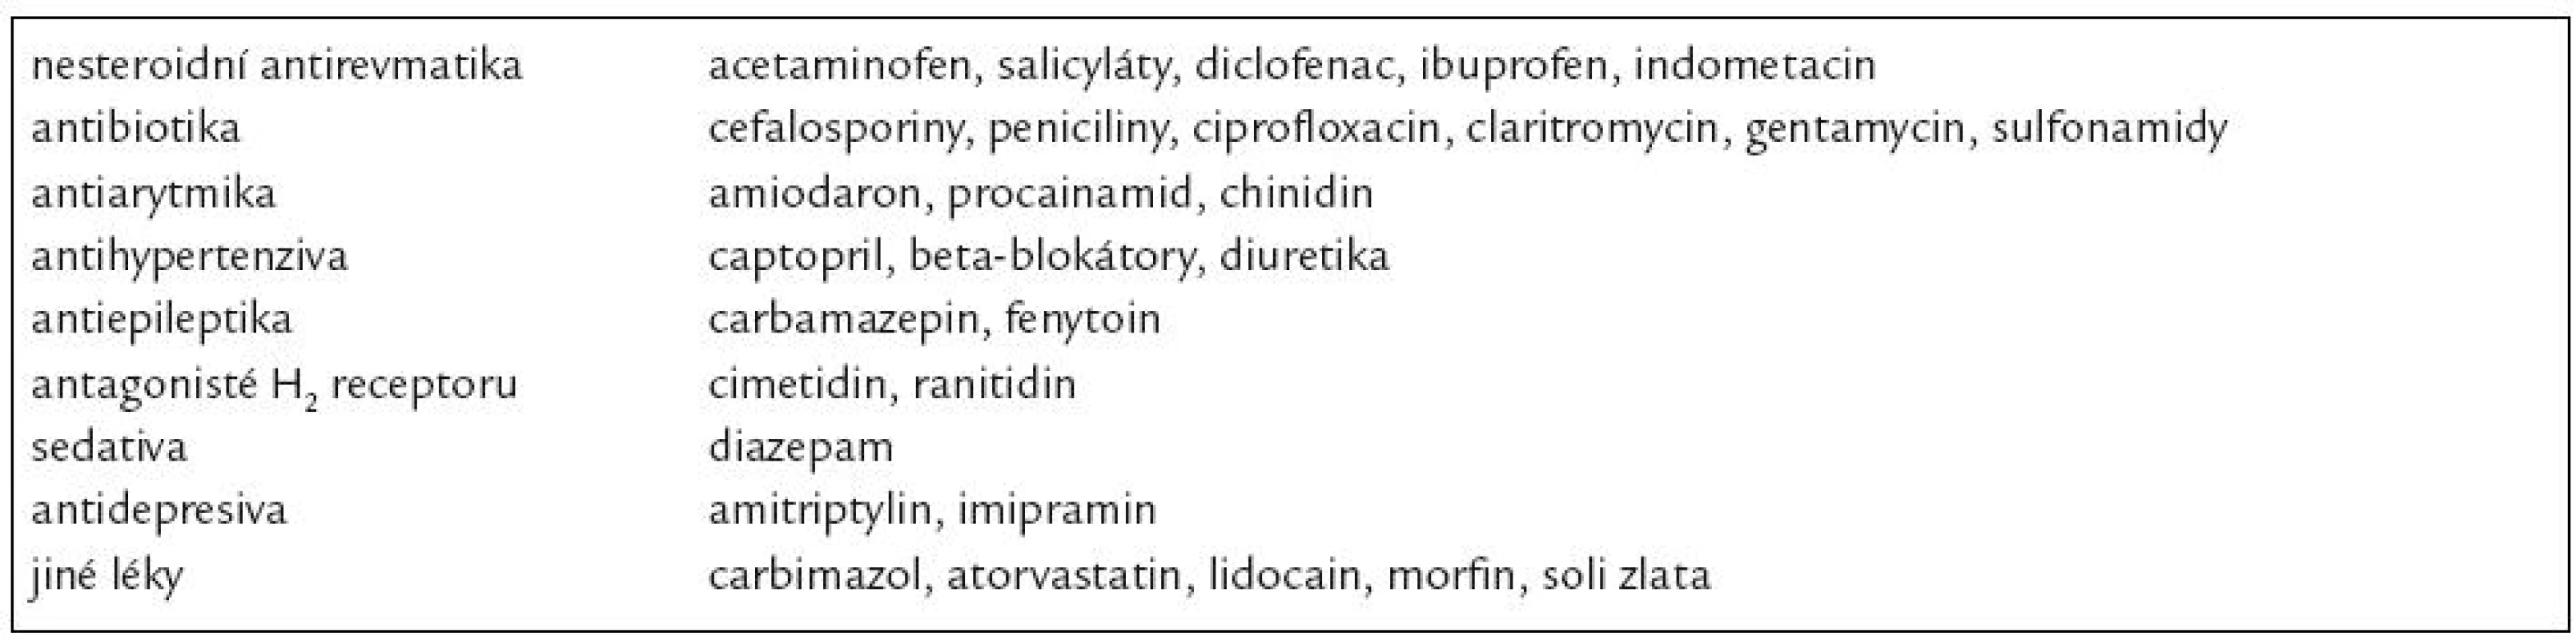 Příklady léků vyvolávajících sekundární imunní trombocytopenii. Upraveno podle [1].